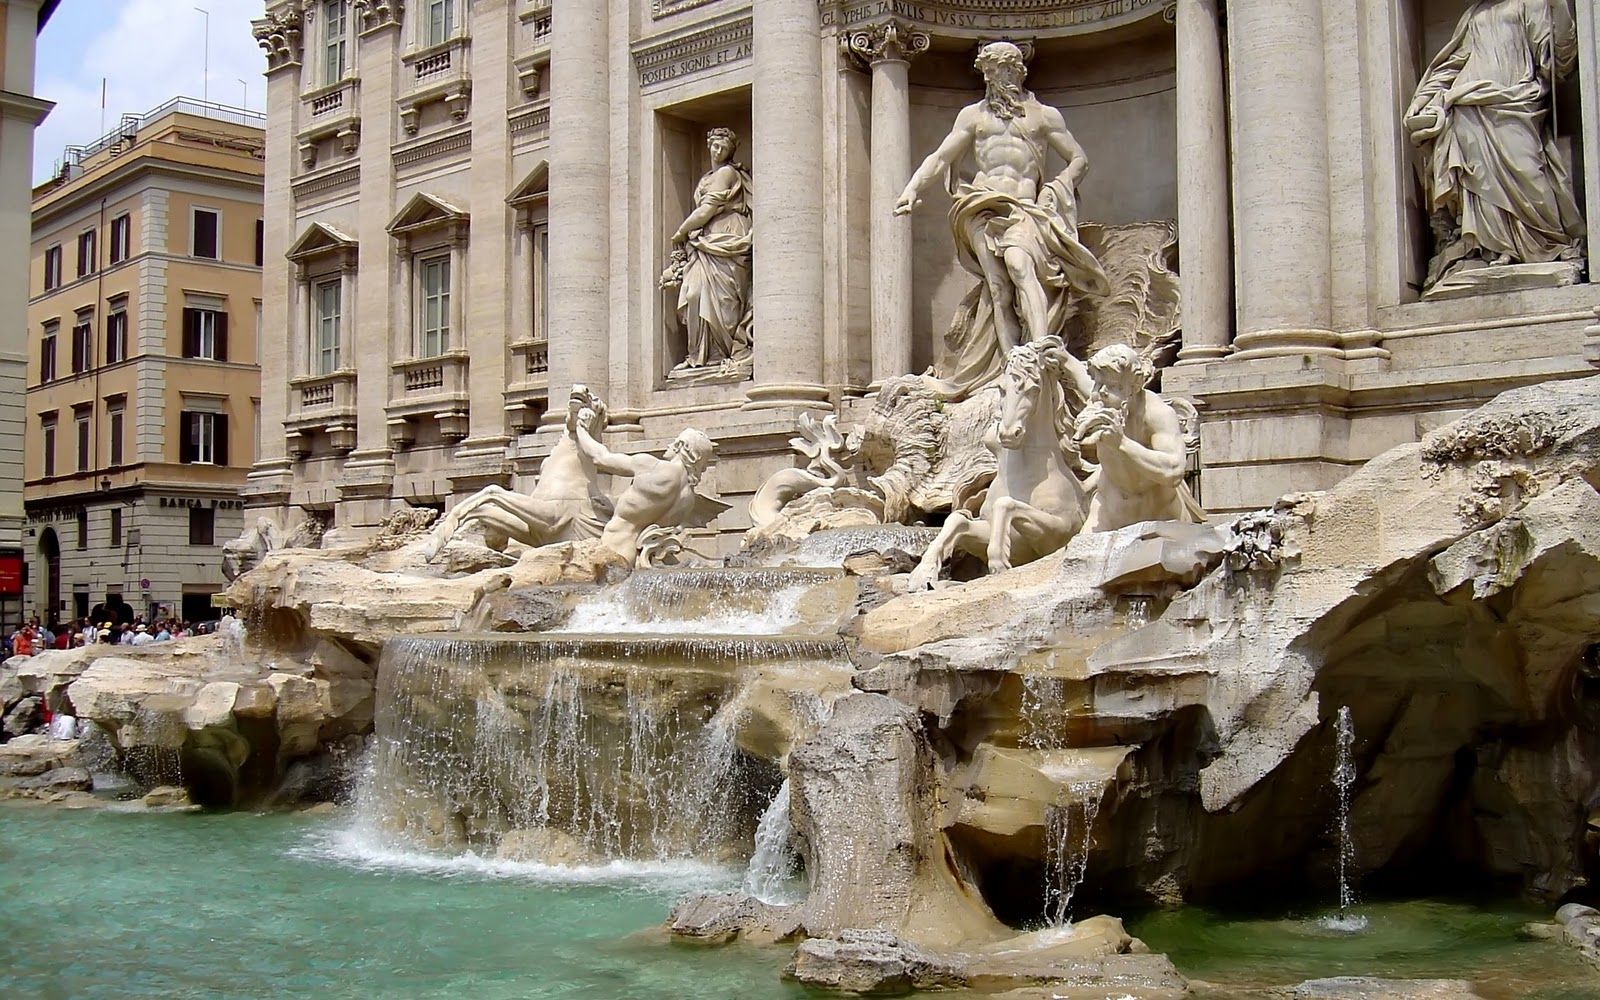 Italian Fountains Wallpaper. Rome Fountains Wallpaper, Fountains Waterfalls Wallpaper and Beautiful Fountains Wallpaper